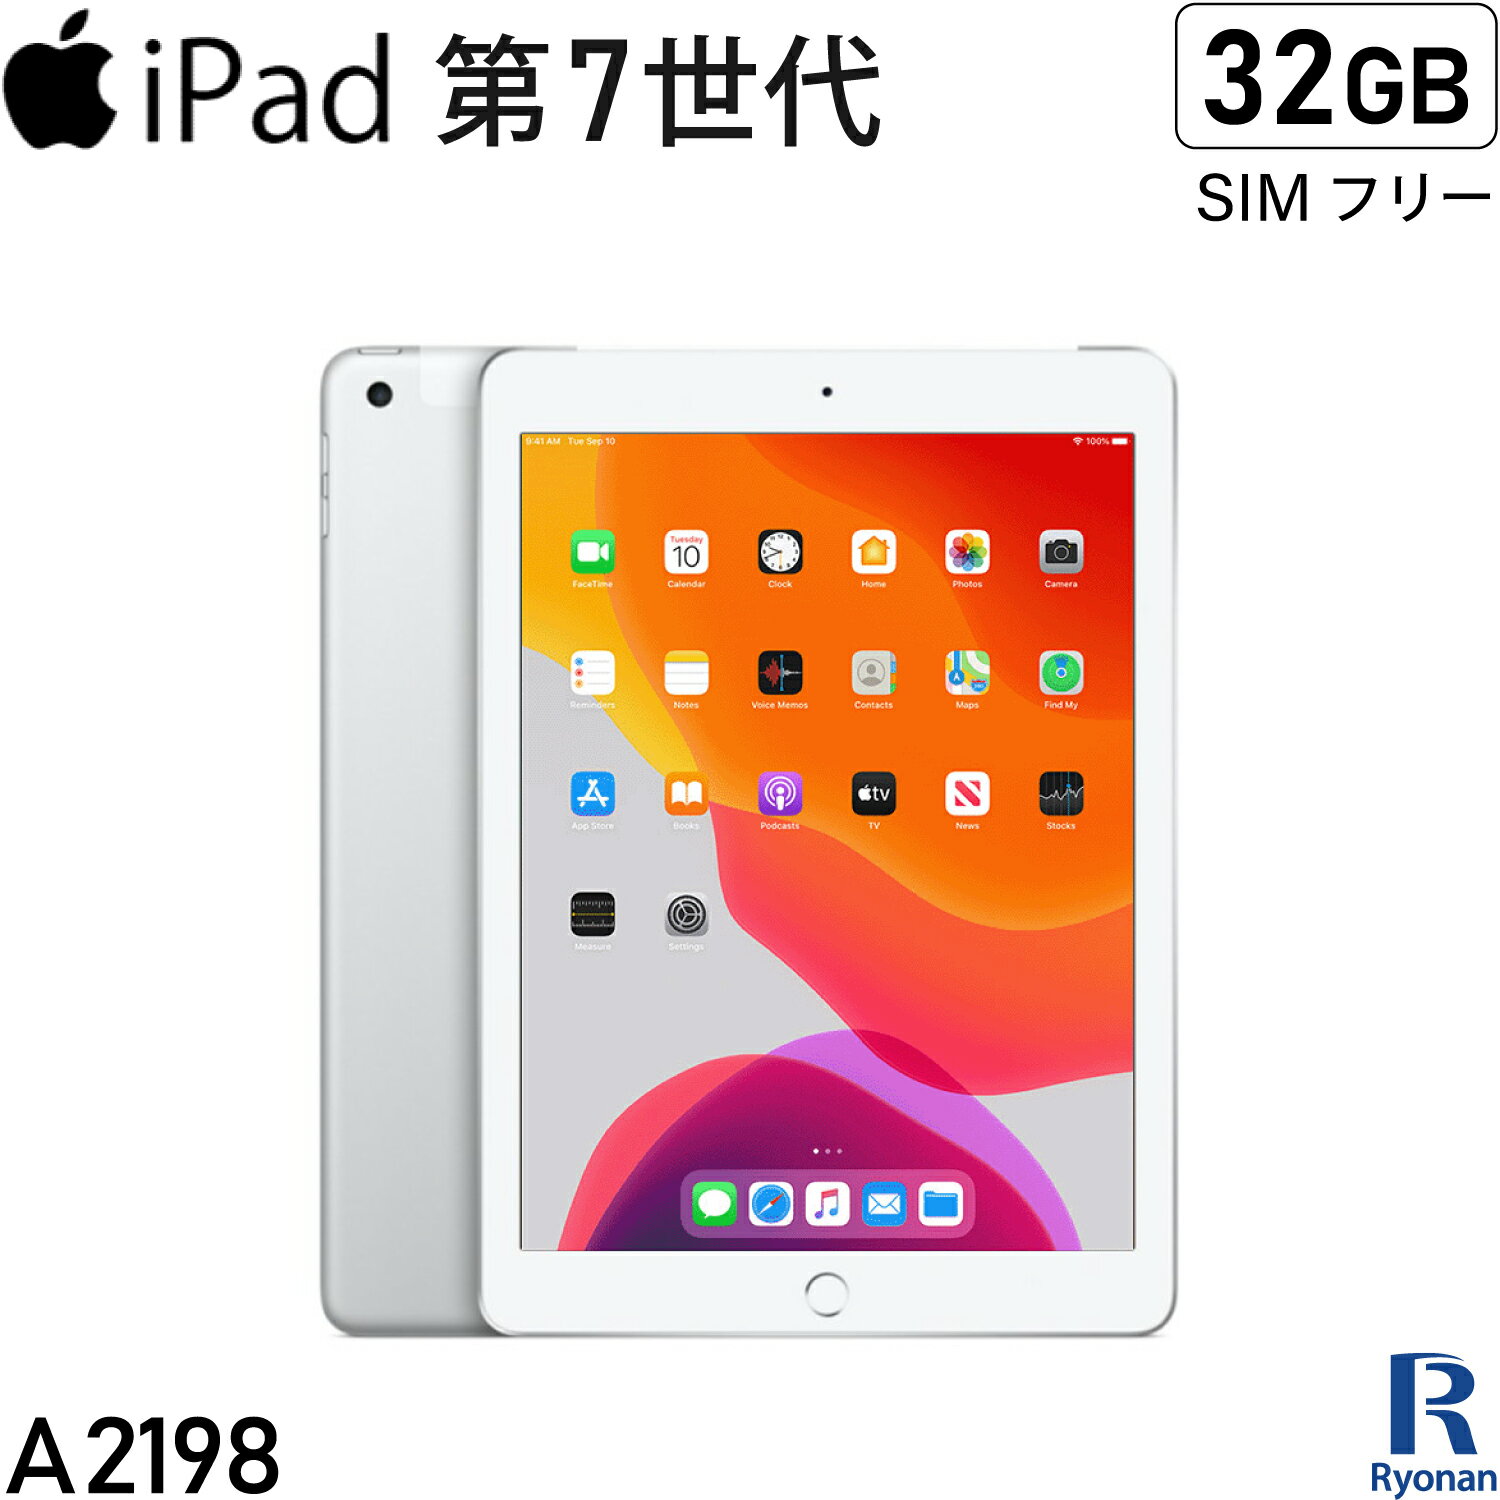 【充電器付き】iPad 第7世代(2019年モデル) / A2198 / 32GB / SIMフリー / Wi-Fi Cellular / 10.2インチ / Retina ディスプレイ / apple / タブレット / iPad中古 / iPad 中古 / シムフリー